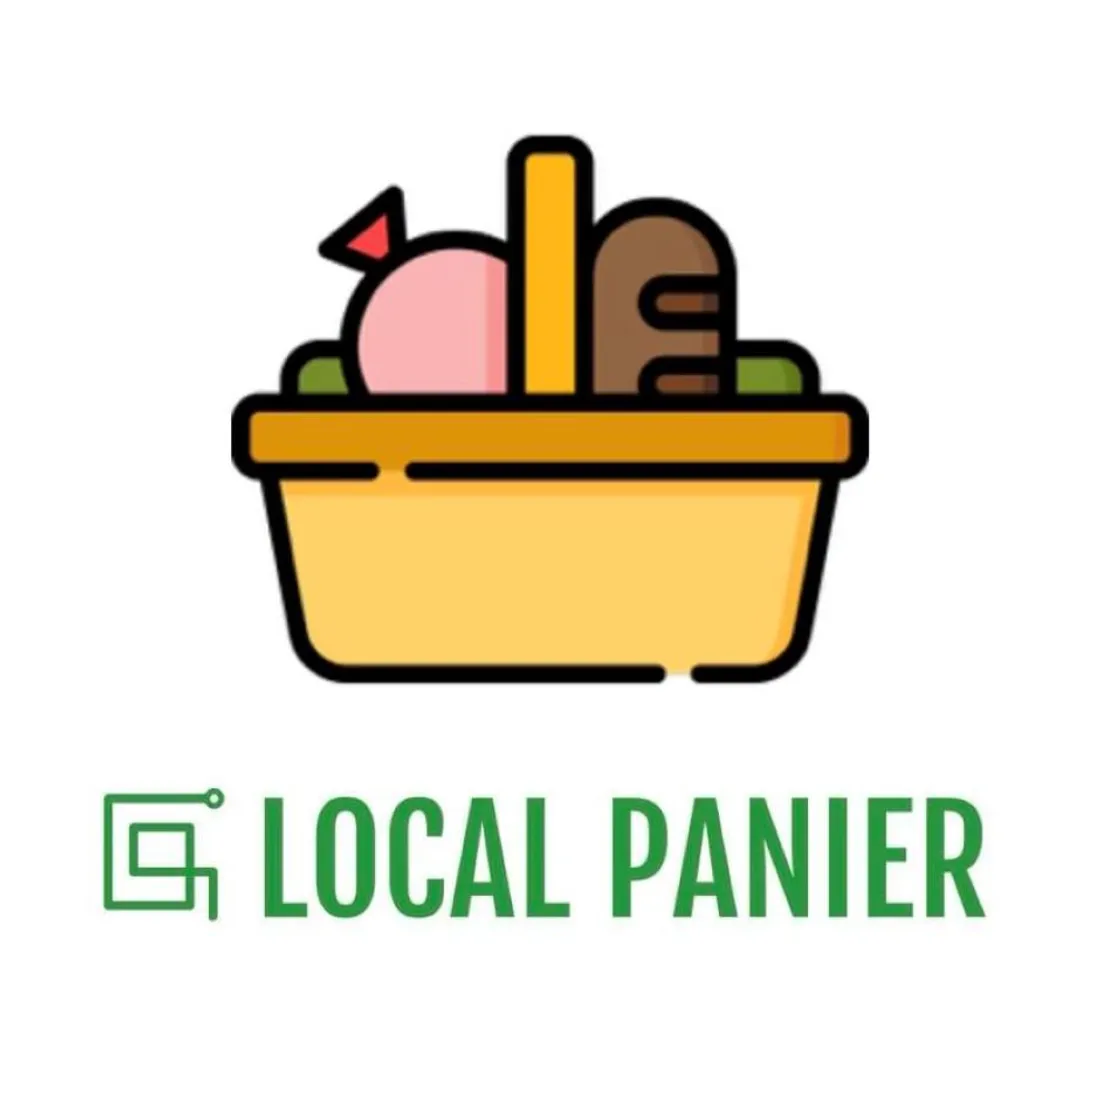 L'application Local panier permet de trouver des producteurs locaux près de chez soi.